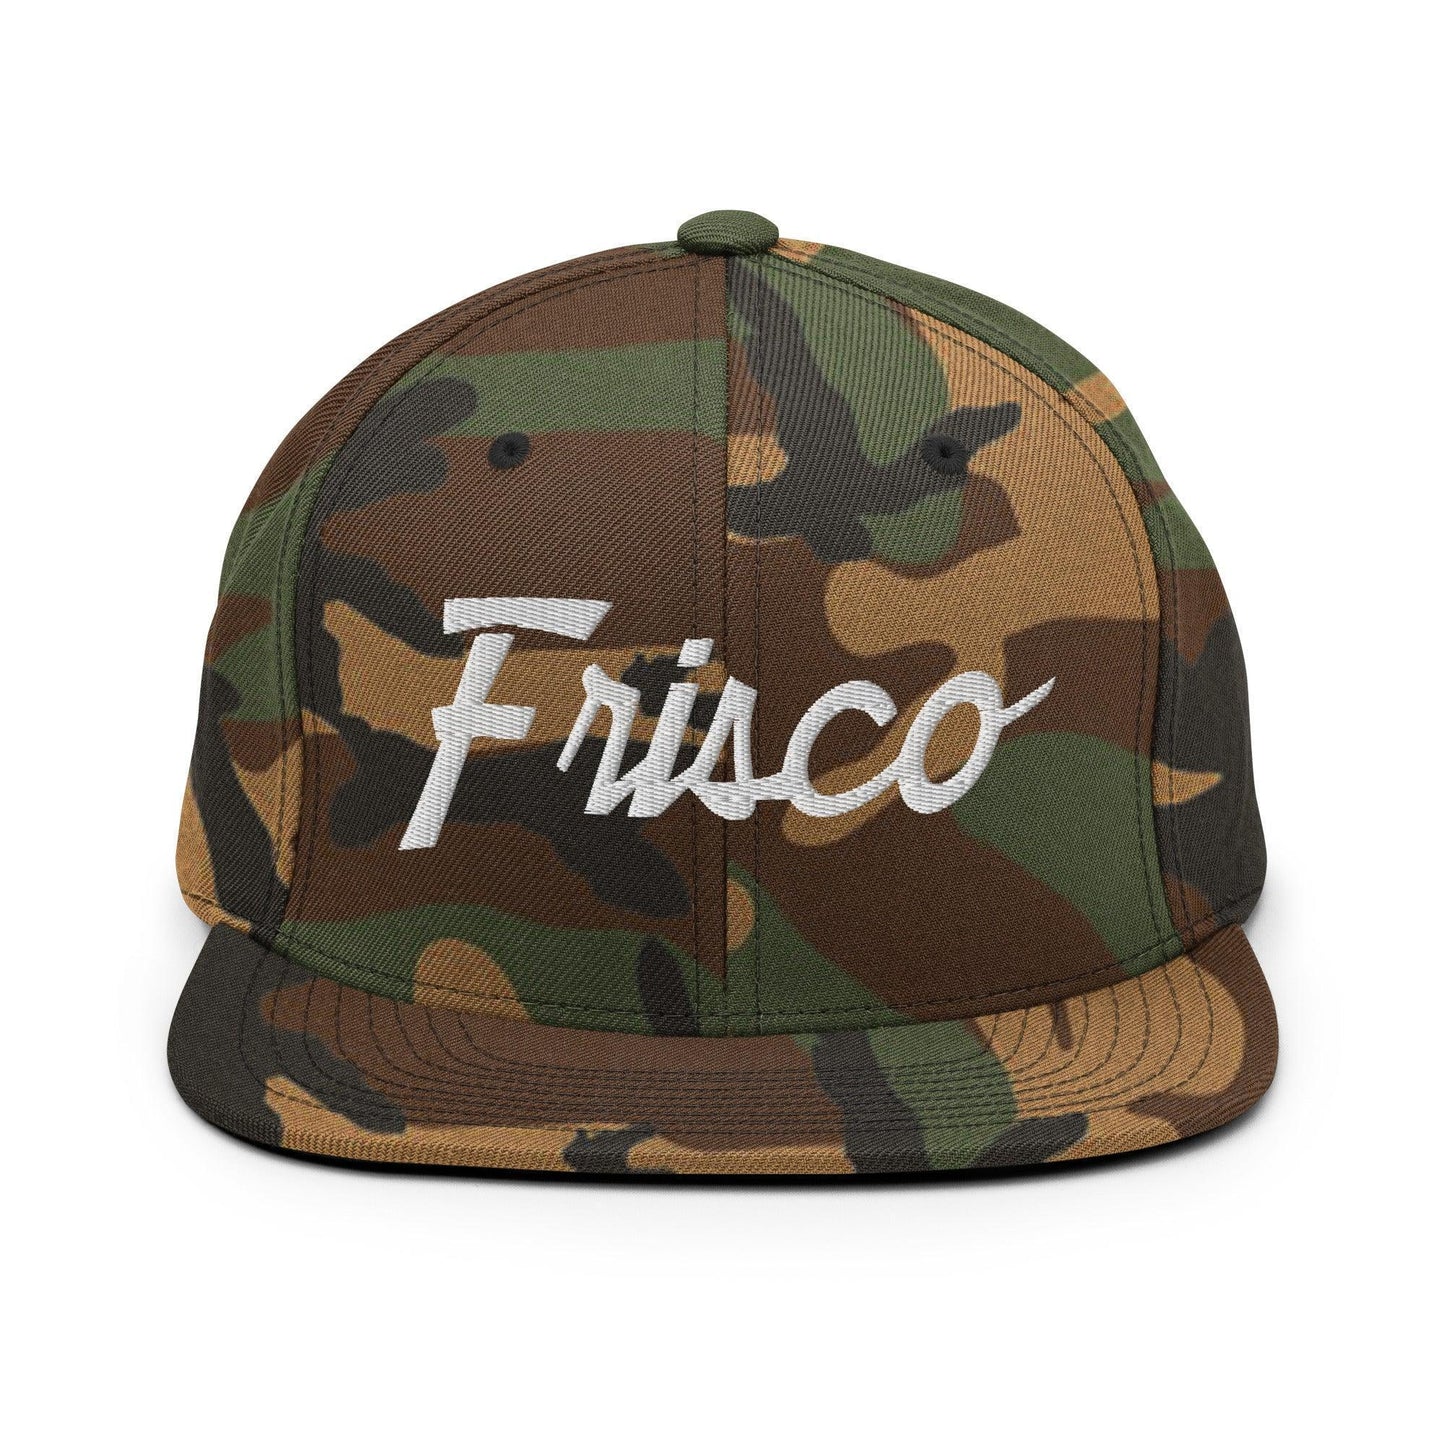 Frisco Script Snapback Hat Green Camo